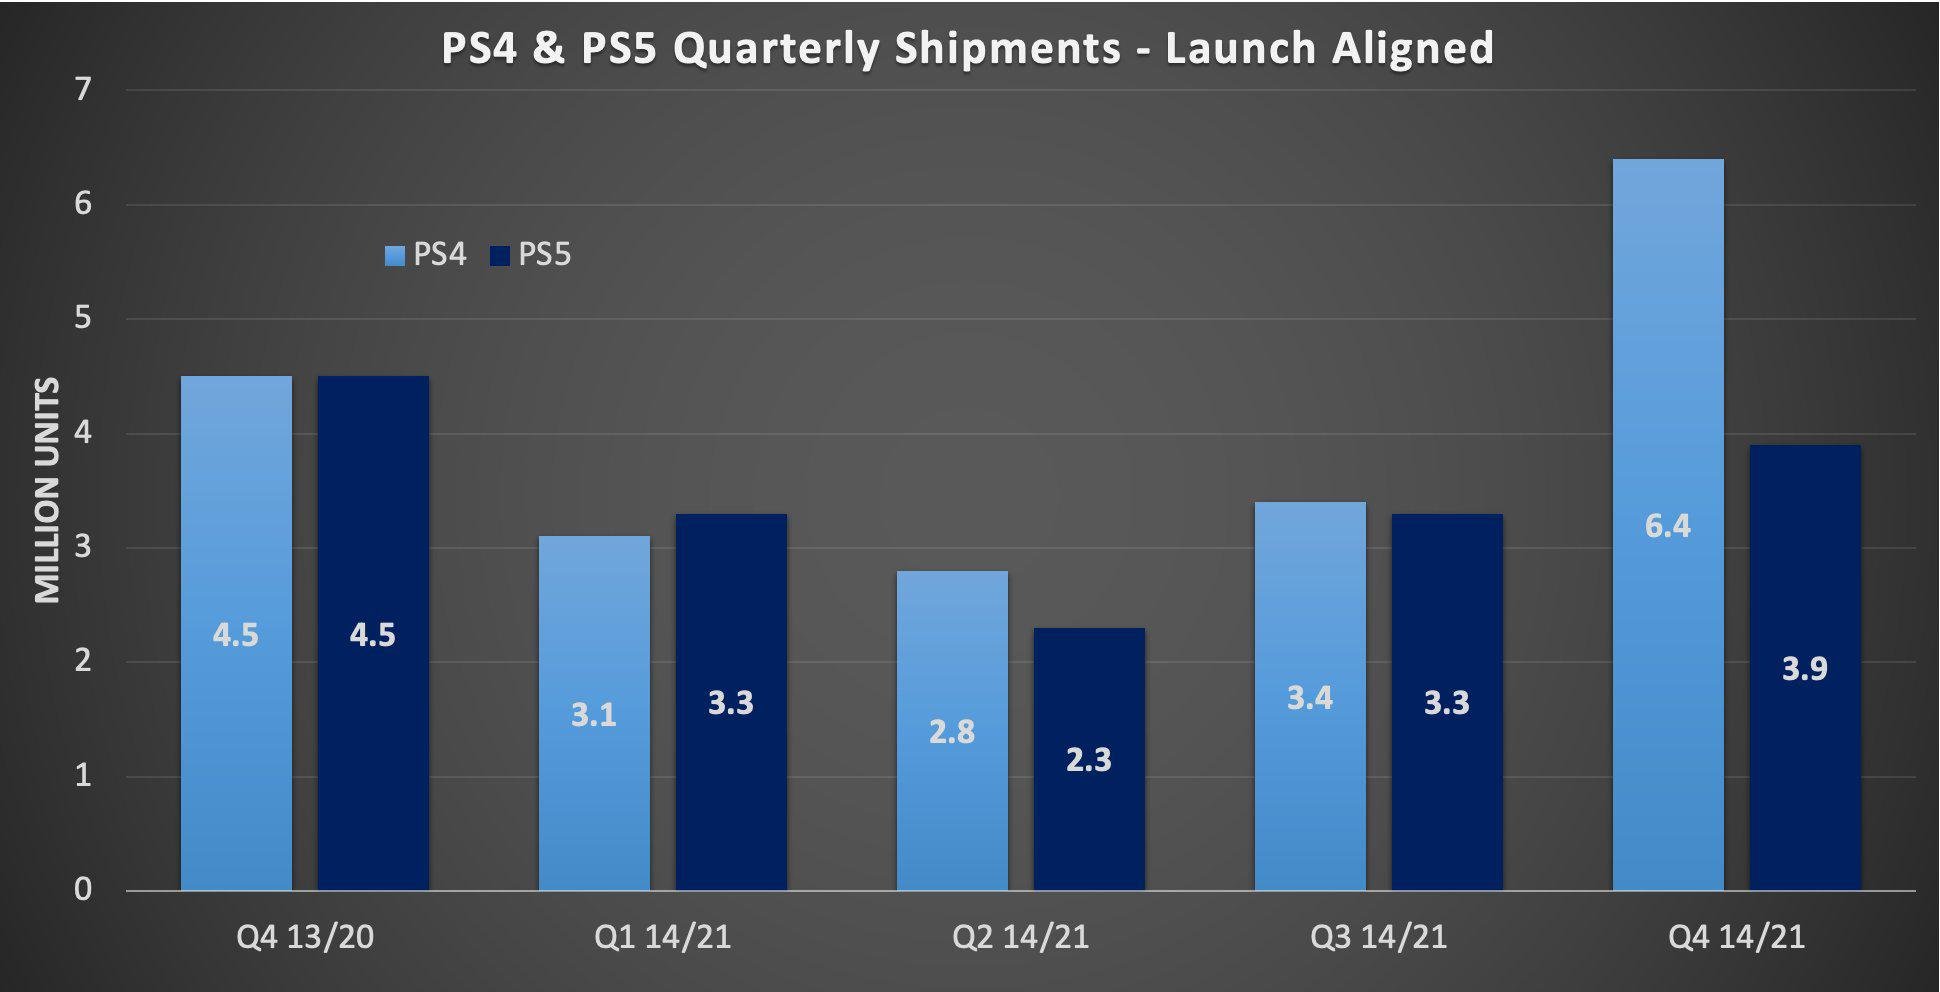 Vendas de PS4 (azul claro) em comparação com as vendas de PS5, em milhões de unidades. Cada par de colunas representa um trimestre a partir dos respectivos lançamentos.